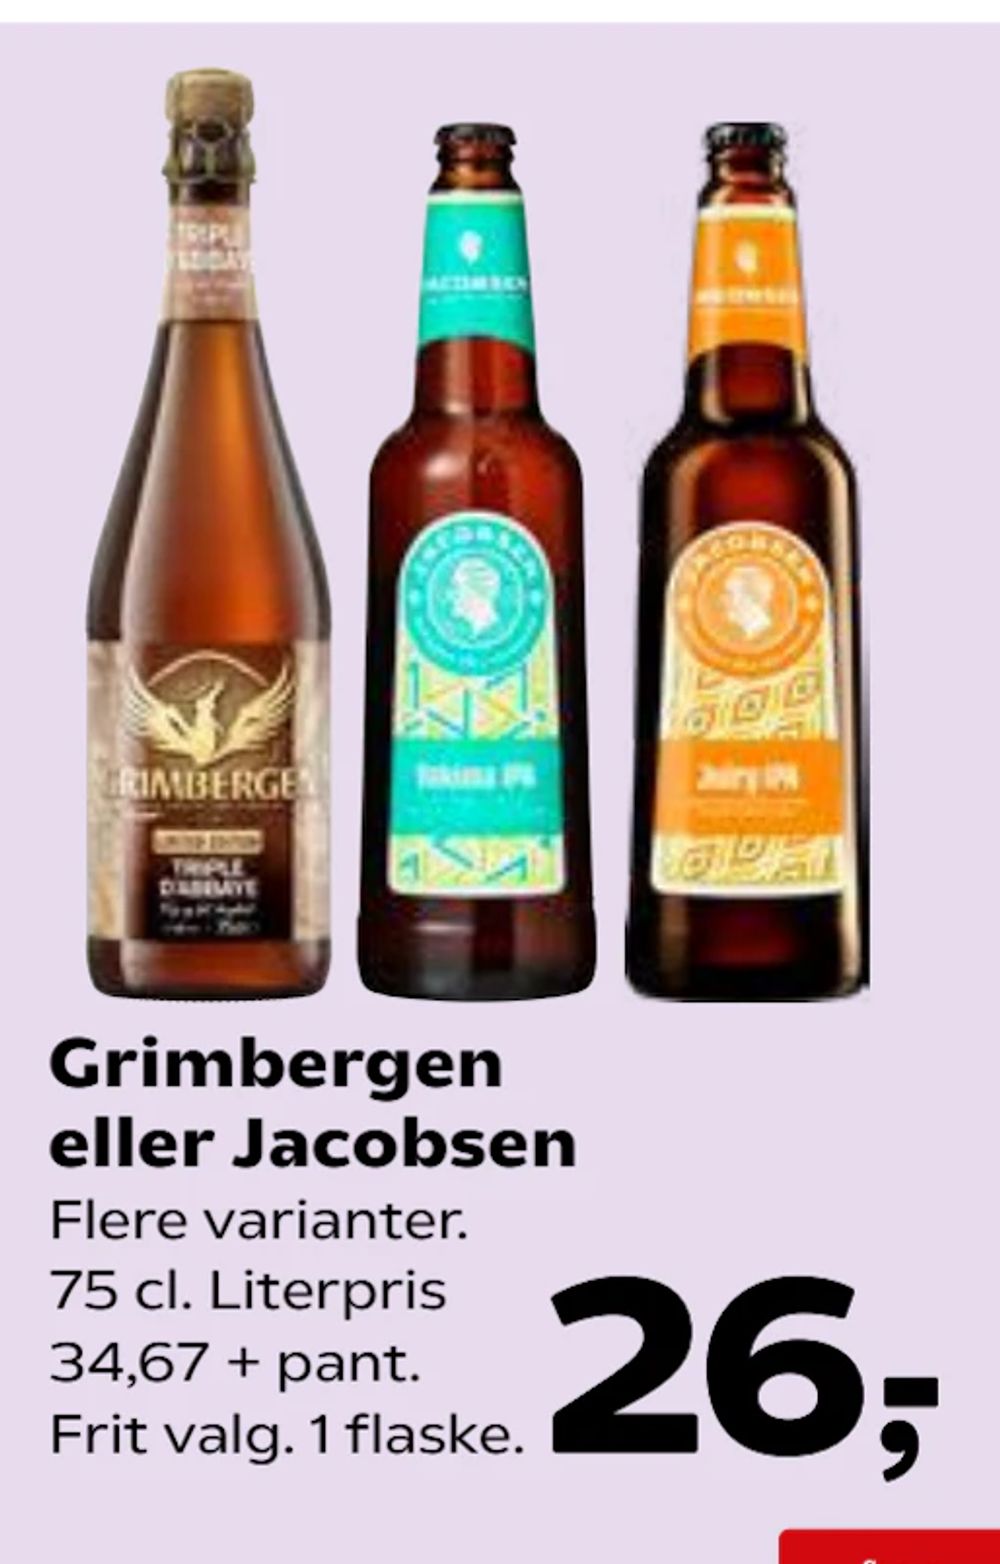 Tilbud på Grimbergen eller Jacobsen fra SuperBrugsen til 26 kr.